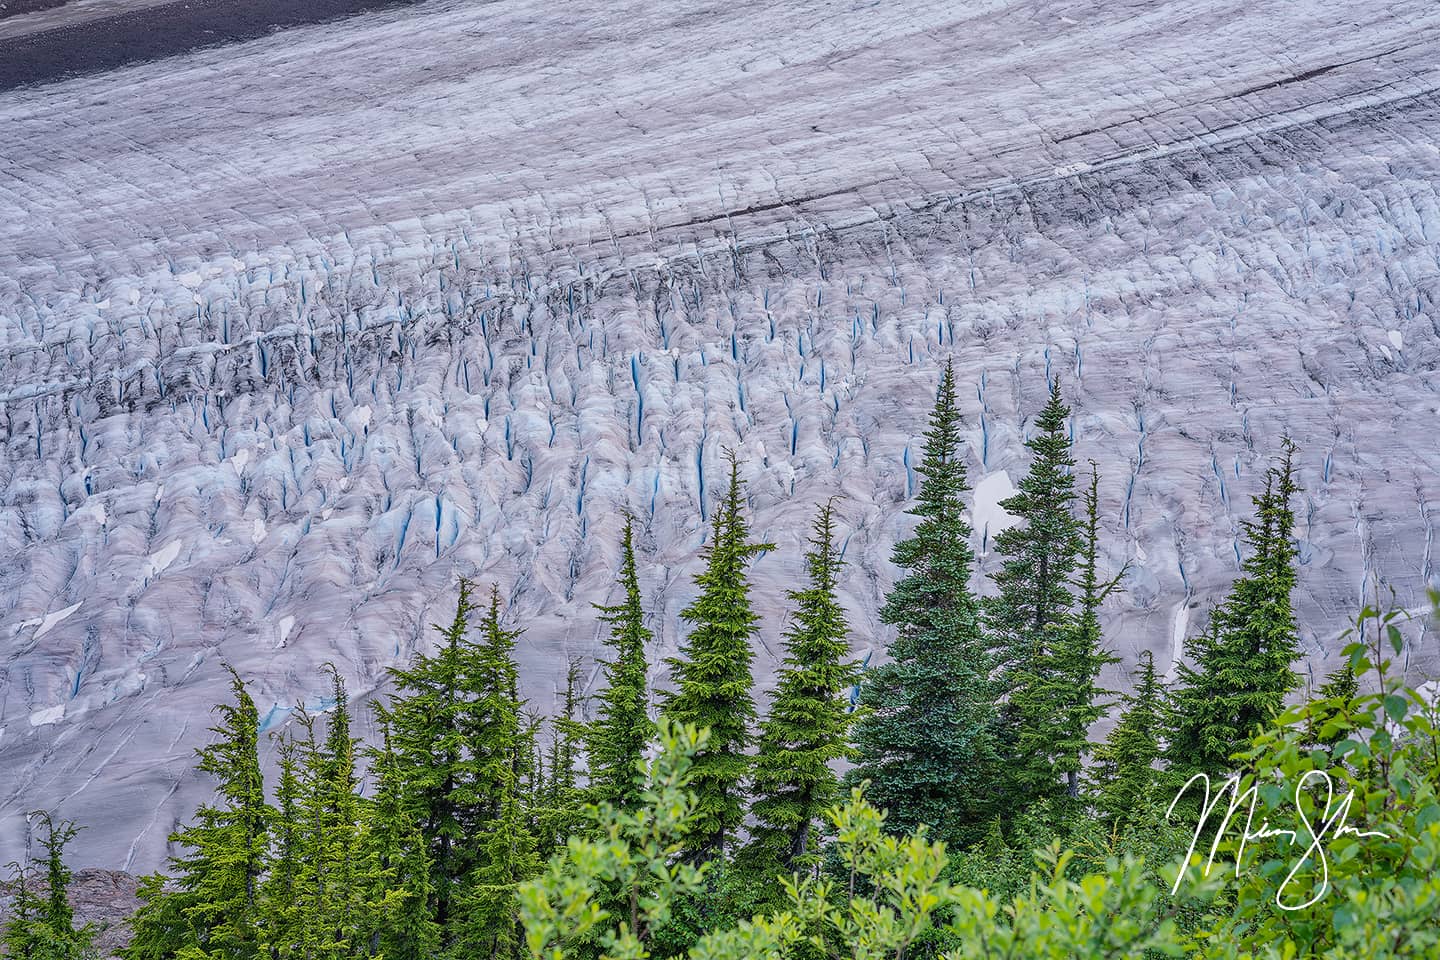 Close-up of the Salmon Glacier